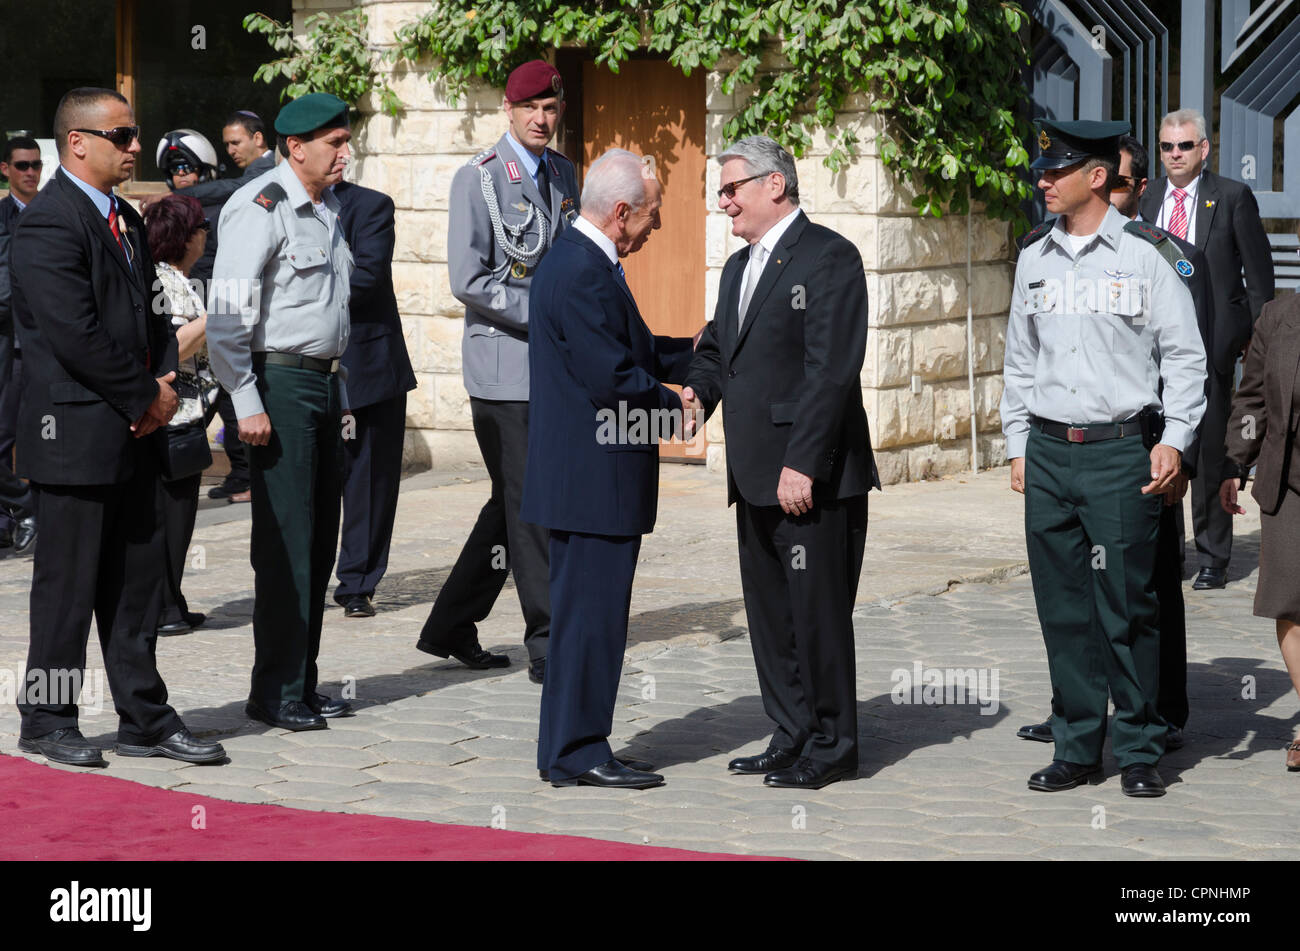 Le président israélien Shimon Peres et son homologue allemand Joachim Gauck revoir une garde d'honneur militaire au cours d'une cérémonie de bienvenue Banque D'Images